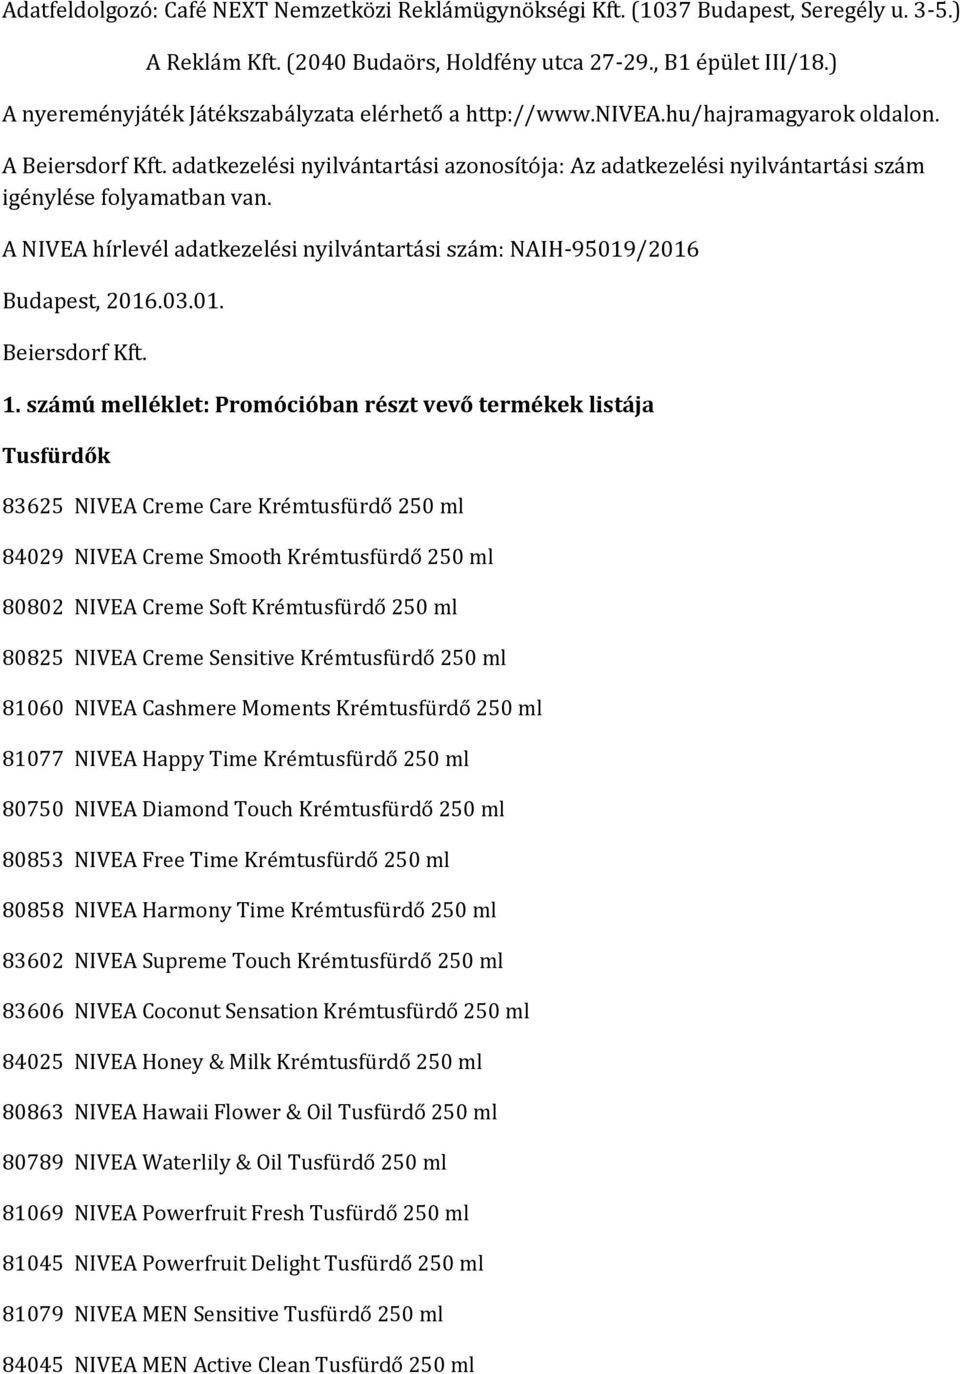 adatkezelési nyilvántartási azonosítója: Az adatkezelési nyilvántartási szám igénylése folyamatban van. A NIVEA hírlevél adatkezelési nyilvántartási szám: NAIH-95019/2016 Budapest, 2016.03.01. Beiersdorf Kft.